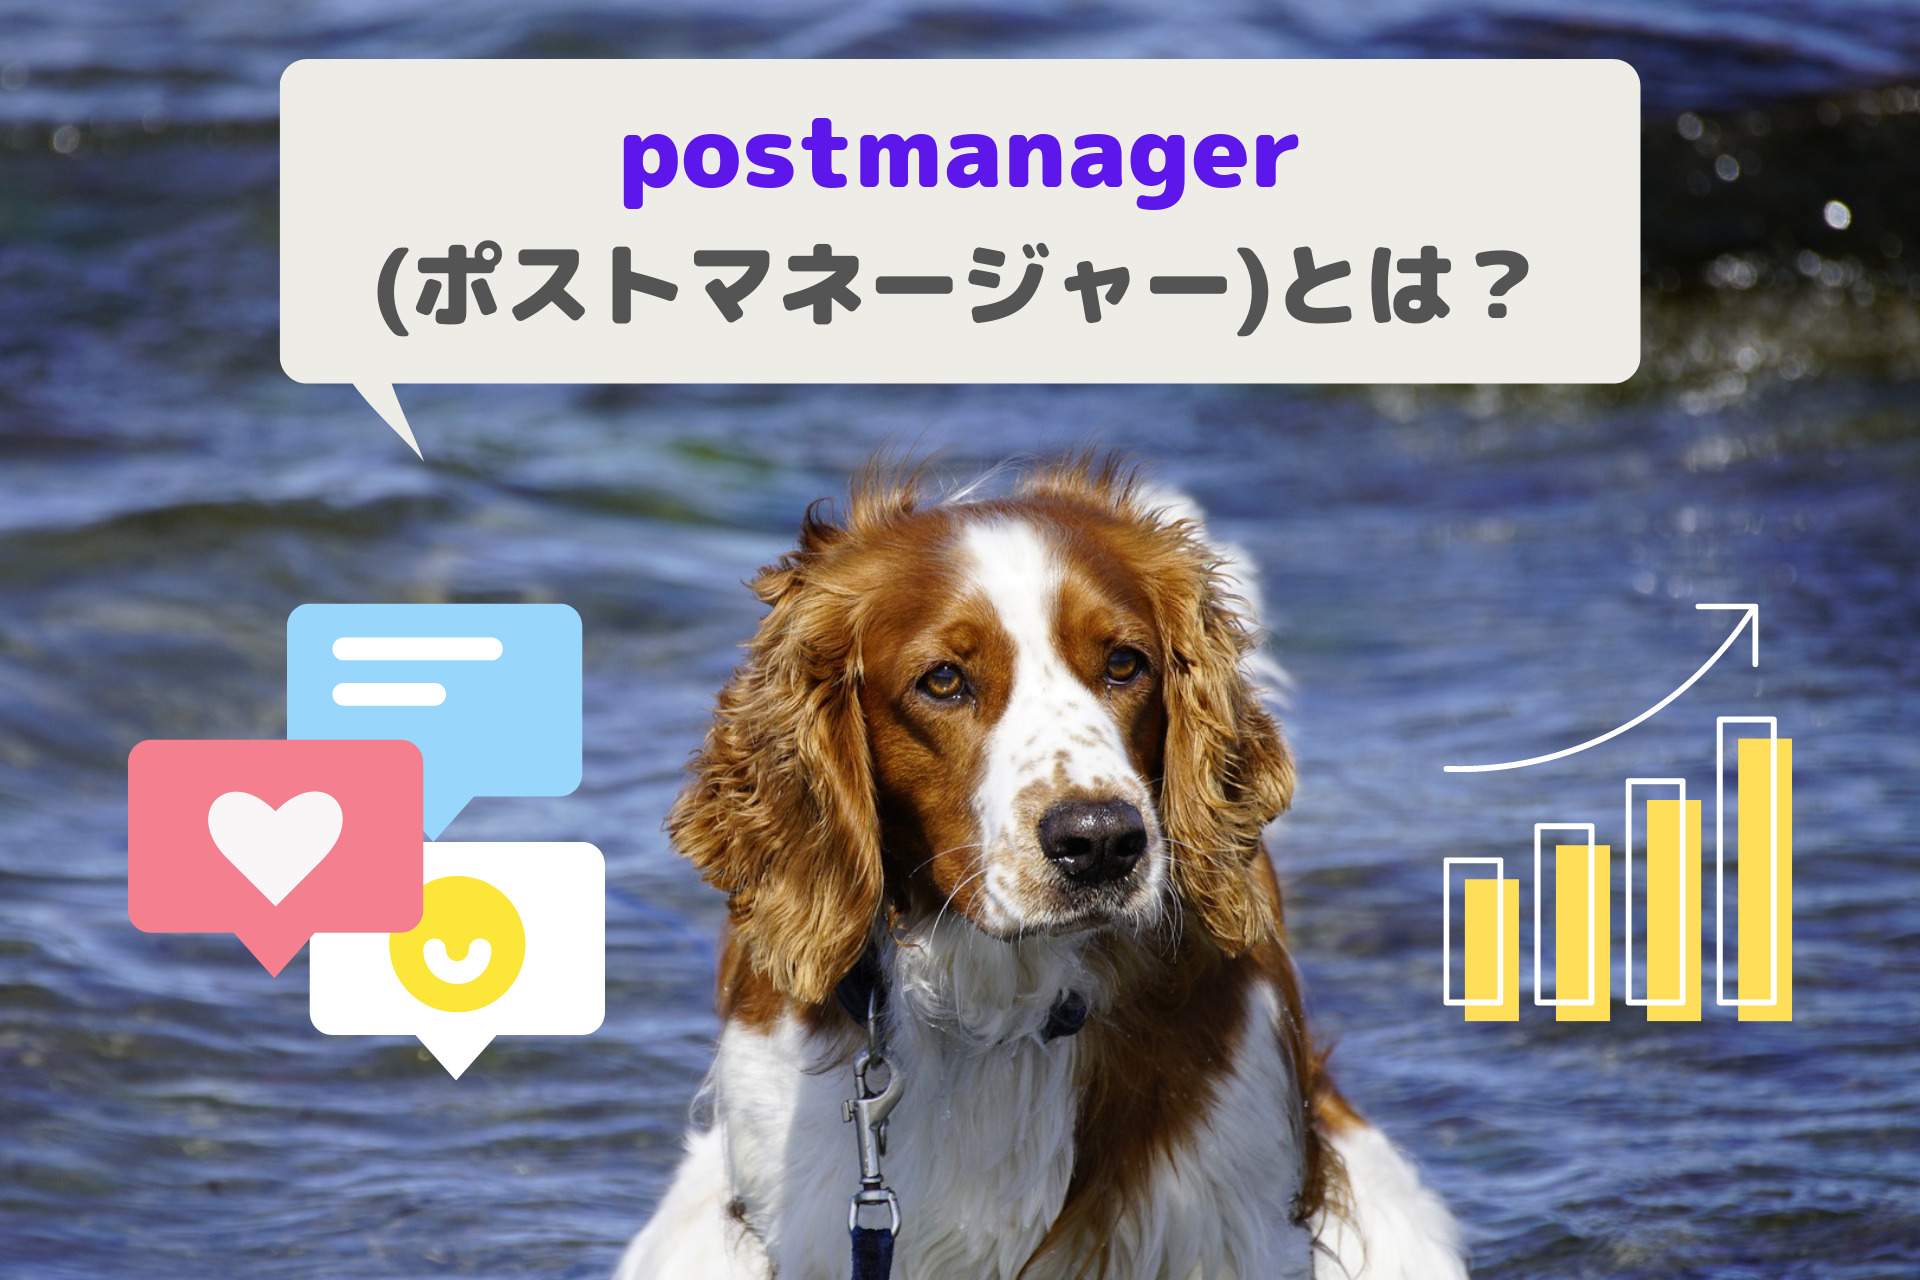 postmanager(ポストマネージャー)とは？